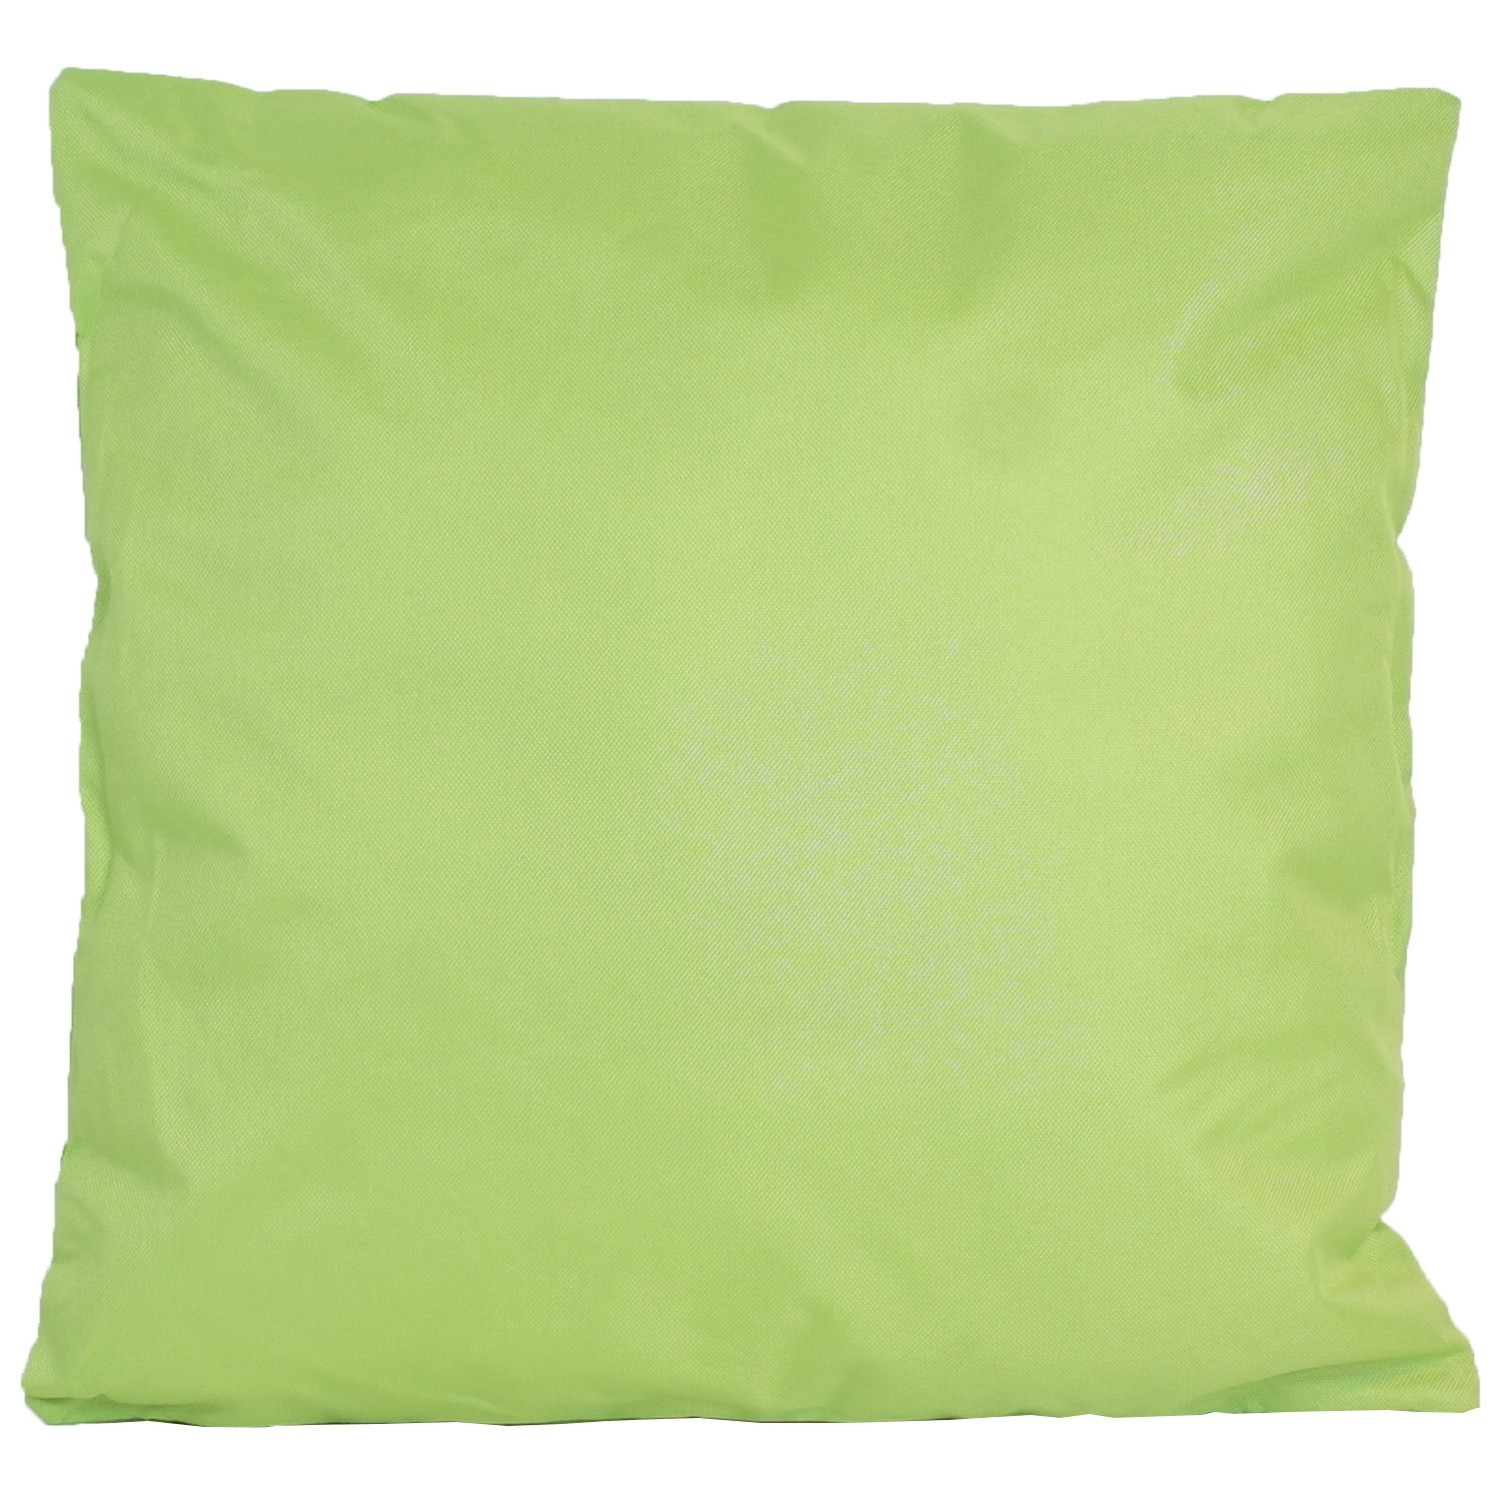 1x Buiten-woonkamer-slaapkamer kussens in het groen 45 x 45 cm